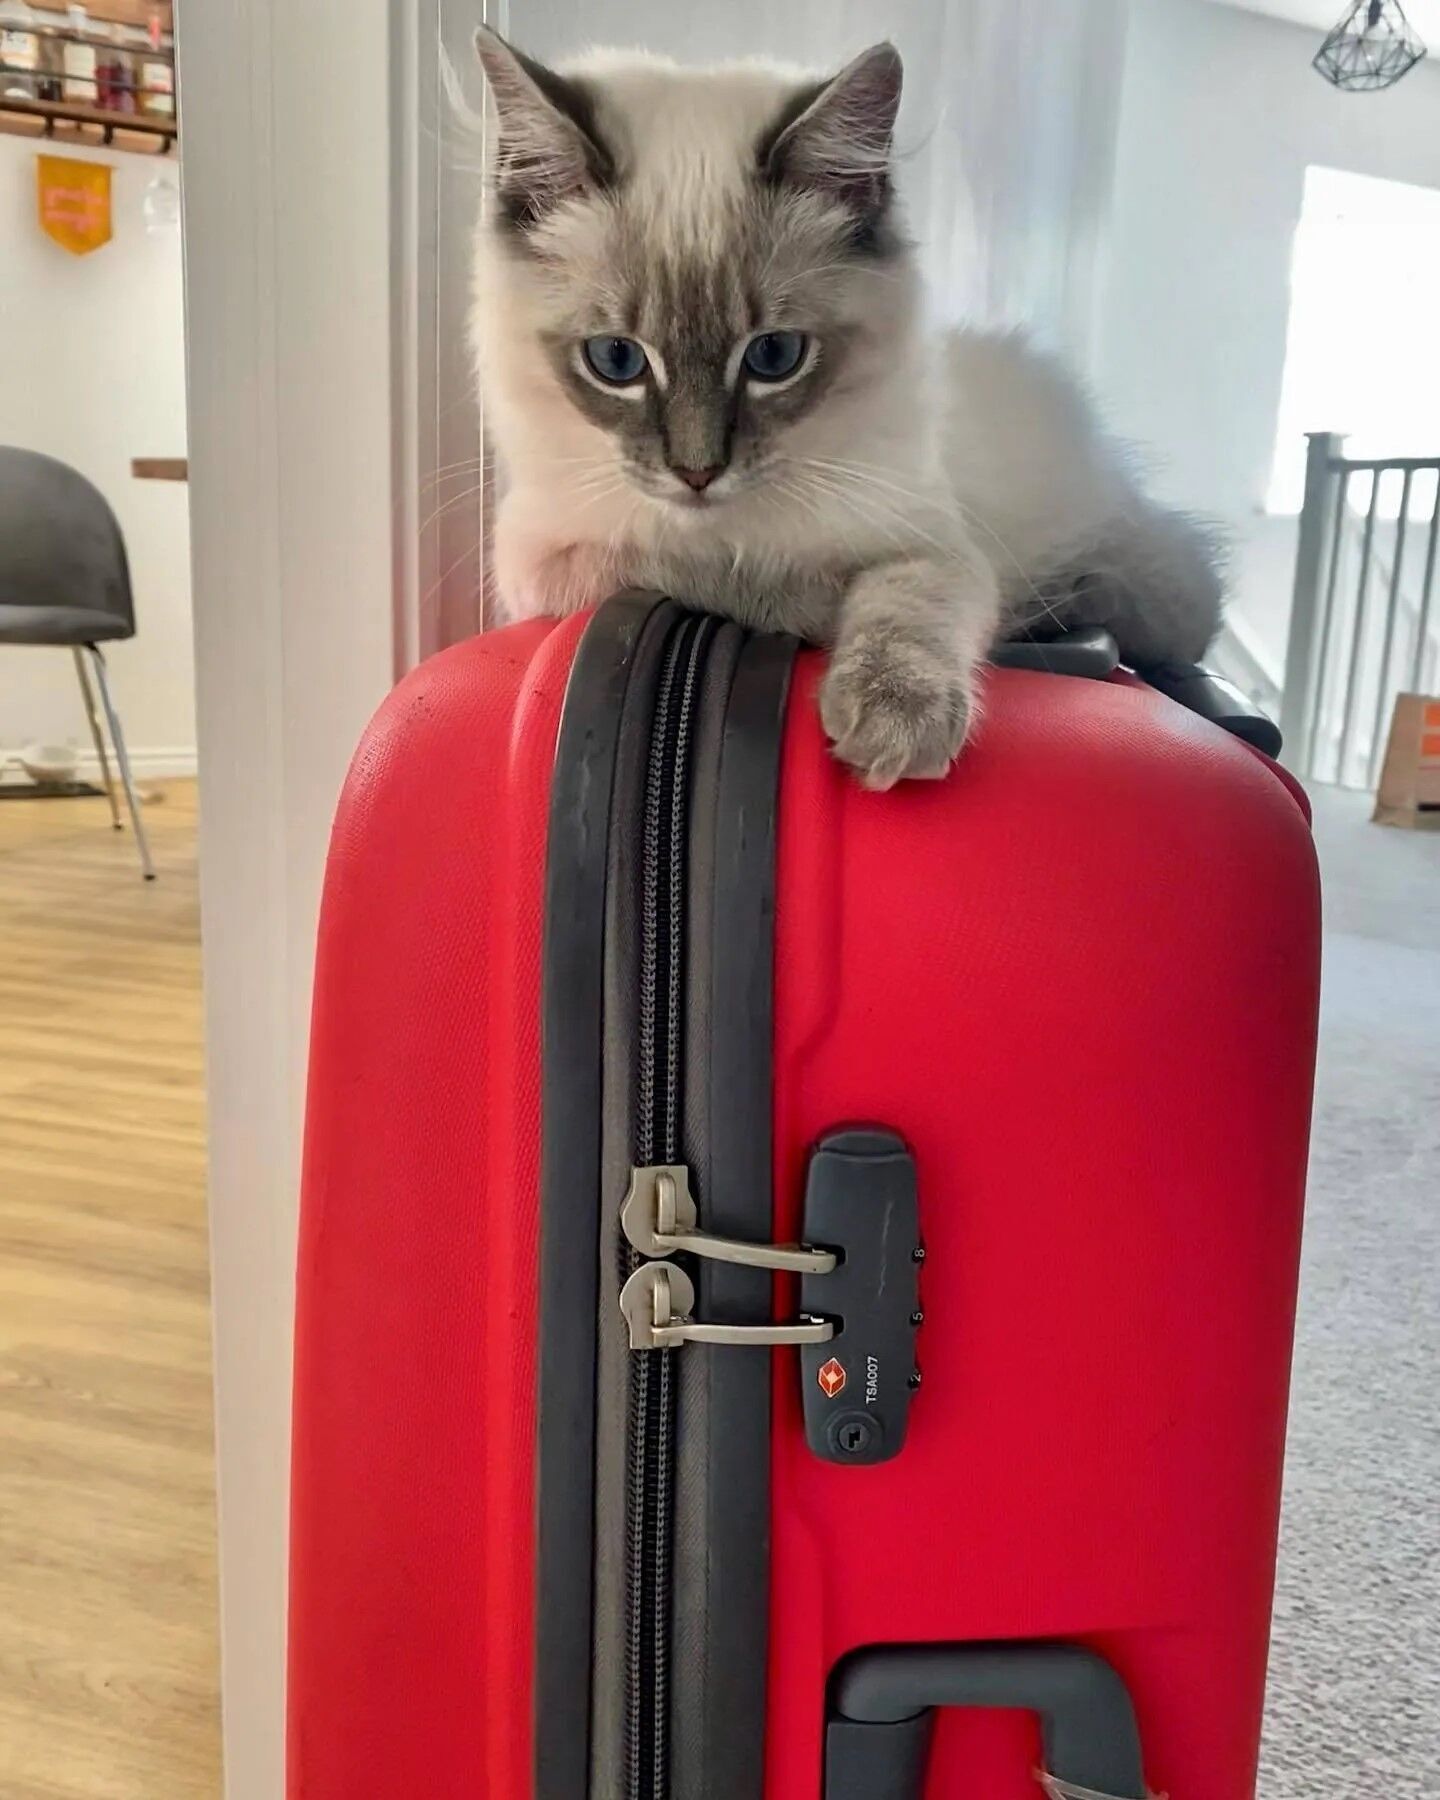 Самые милые котики, которые удобно сидят на чемоданах и составляют кампанию своим хозяевам, пока они упаковывают вещи